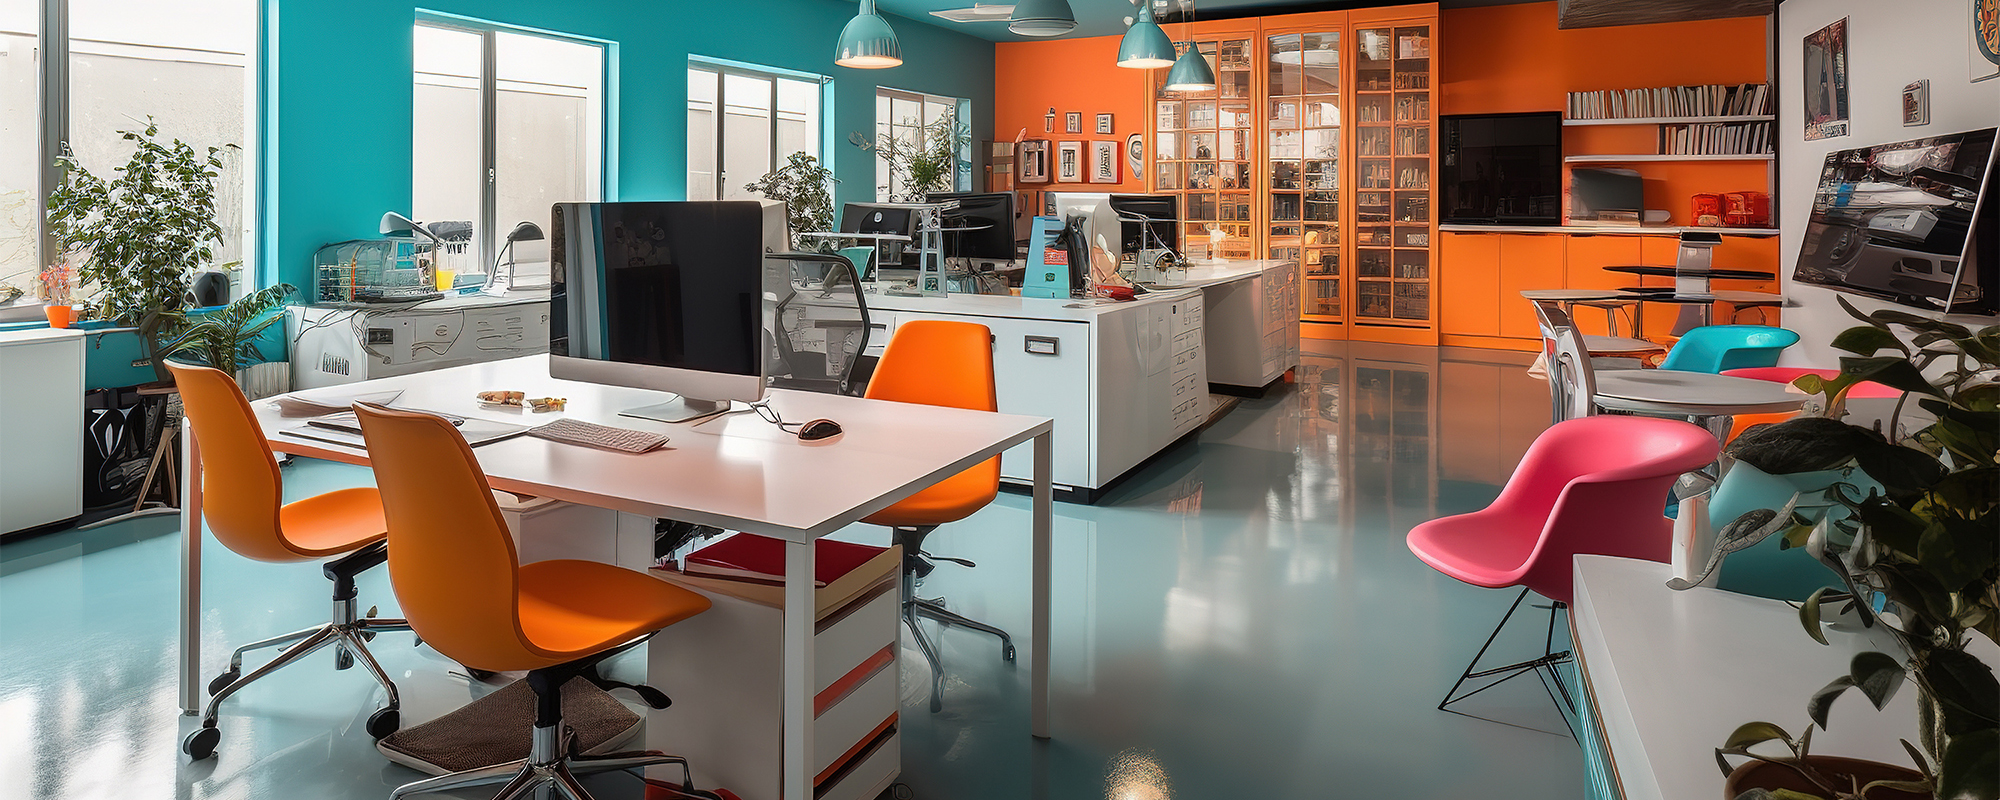 modernes Großraumbüro mit orangen Büromöbeln und vielen bunten Sesseln und Pflanzen. einladende Atmosphäre, keine Menschen